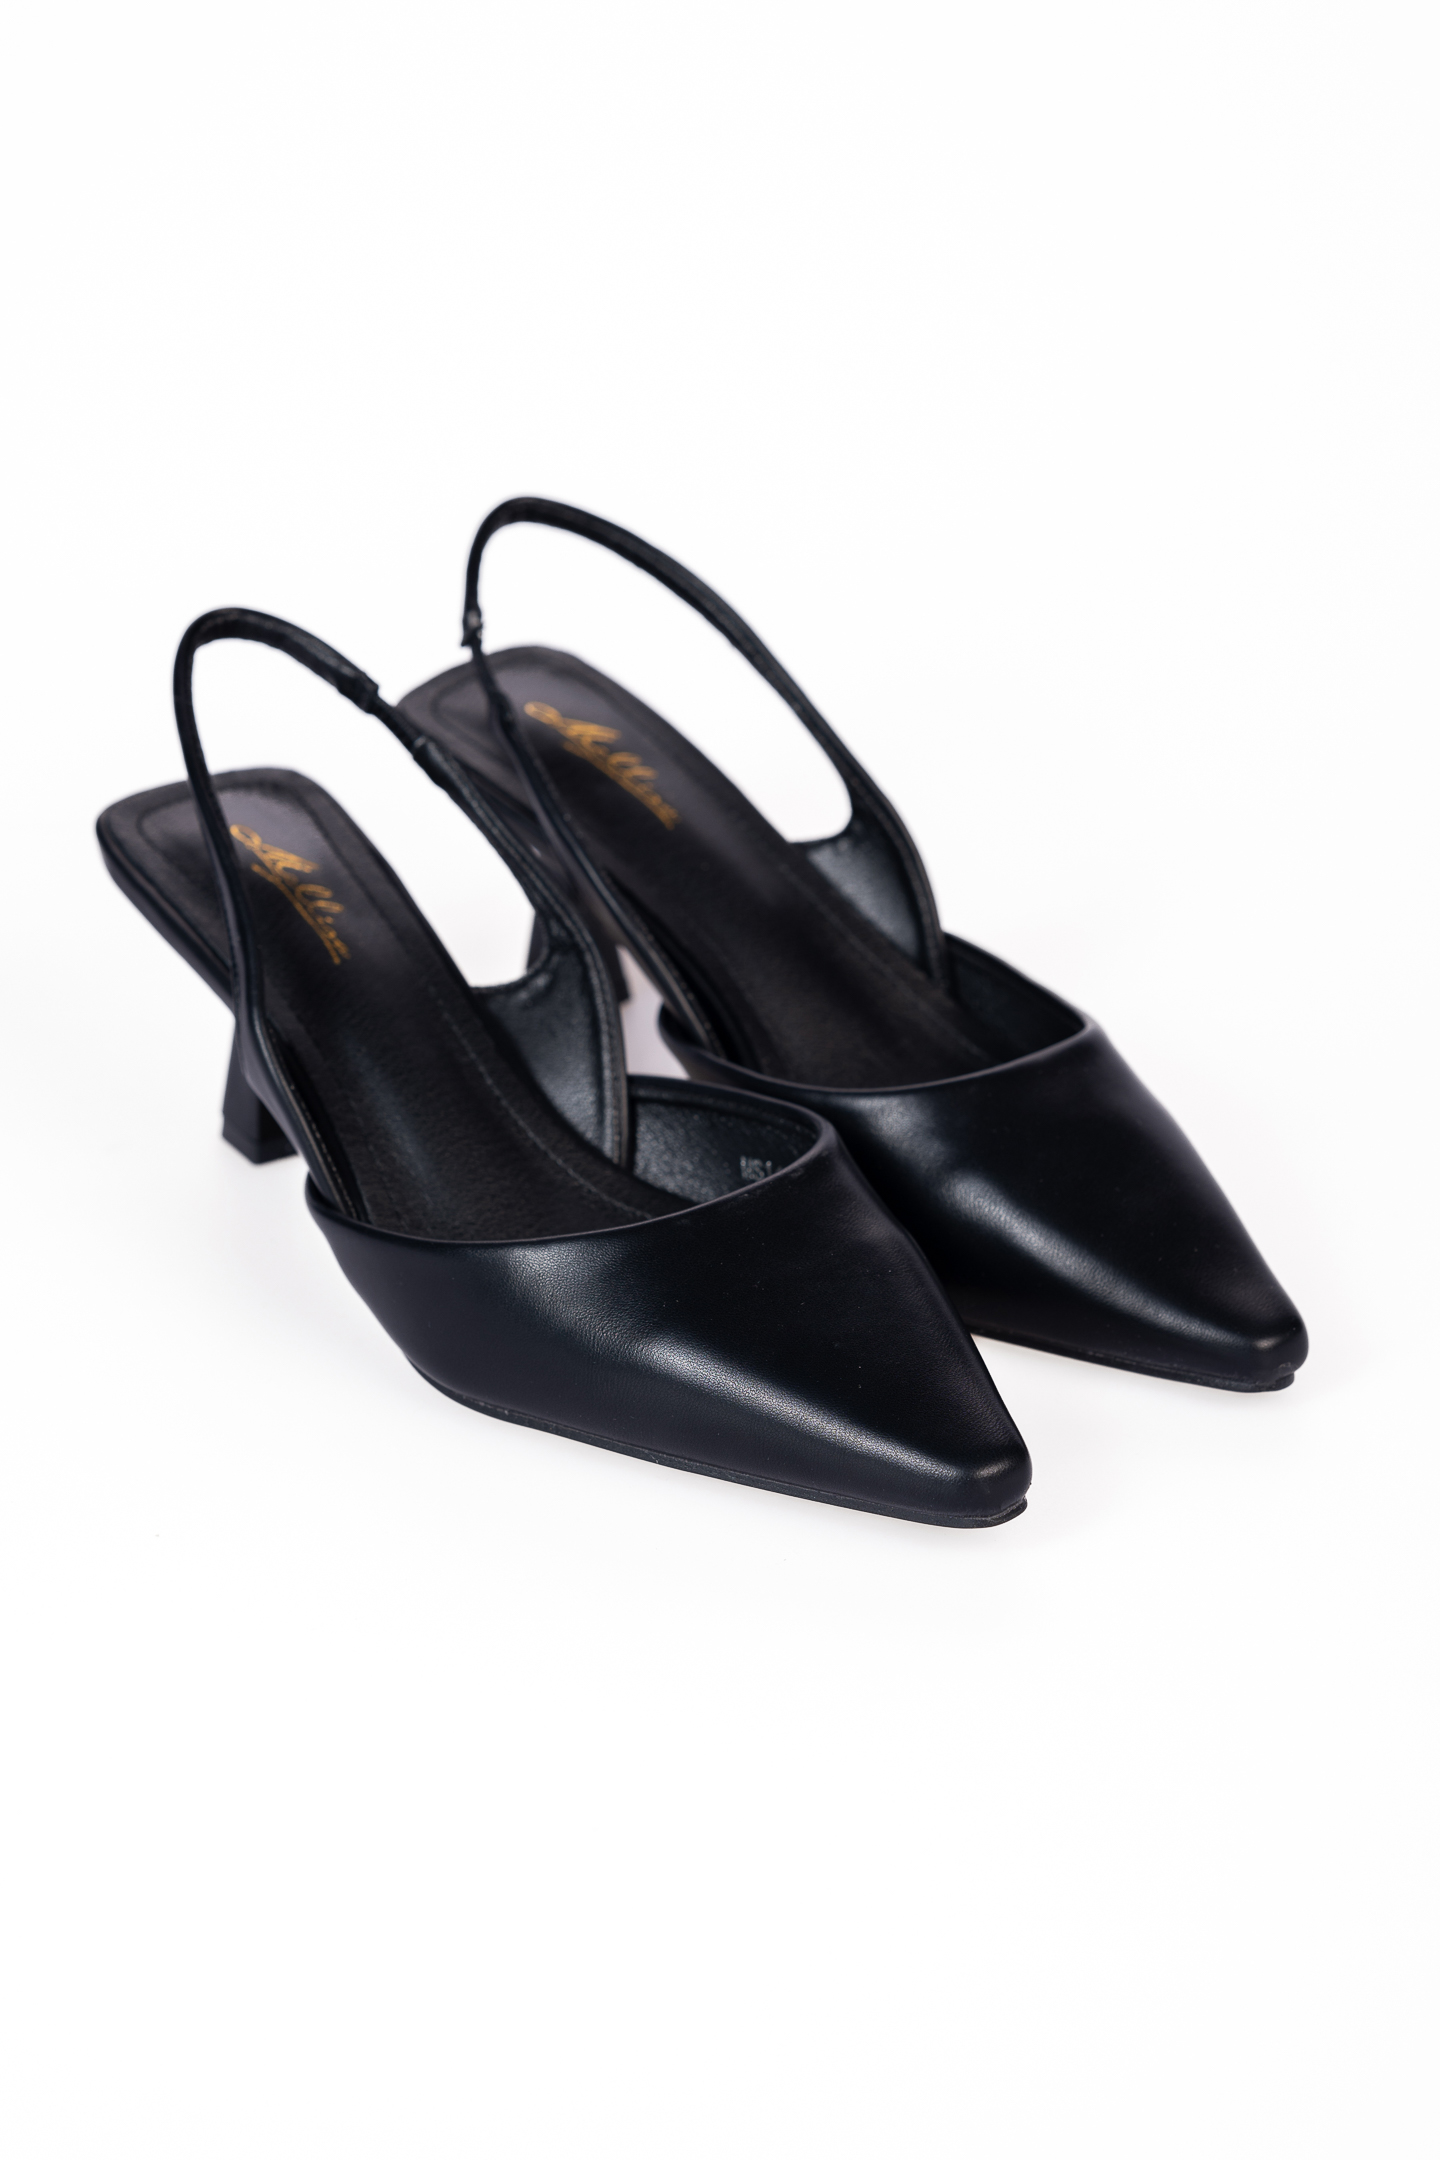 Μυερές open heel γόβες με λεπτό τακούνι - Μαύρο Παπούτσια > Γόβες